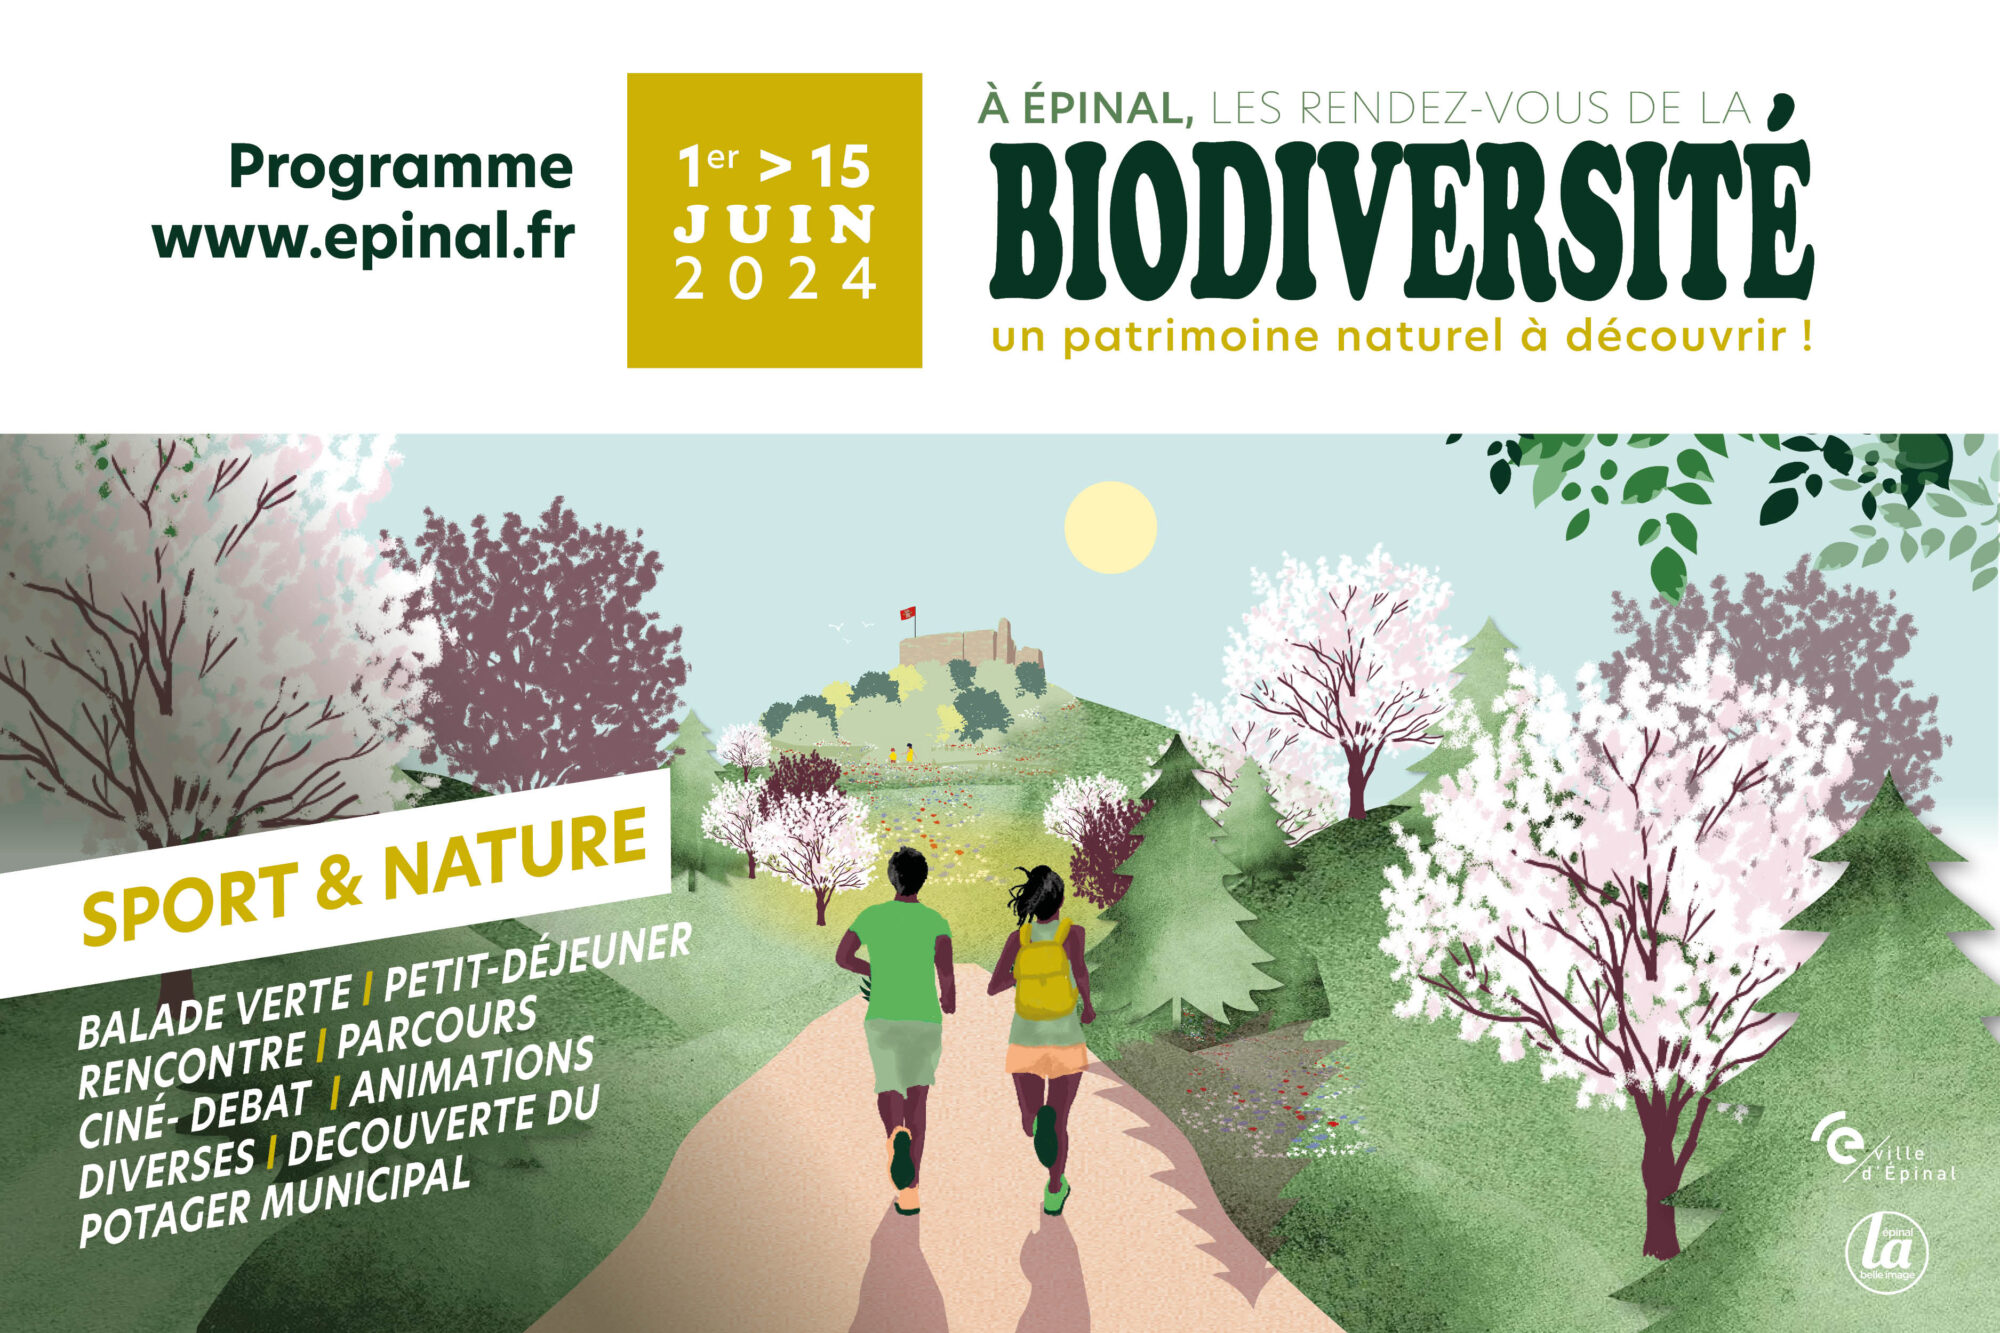 Rendez-vous avec la biodiversité du 1er au 15 juin